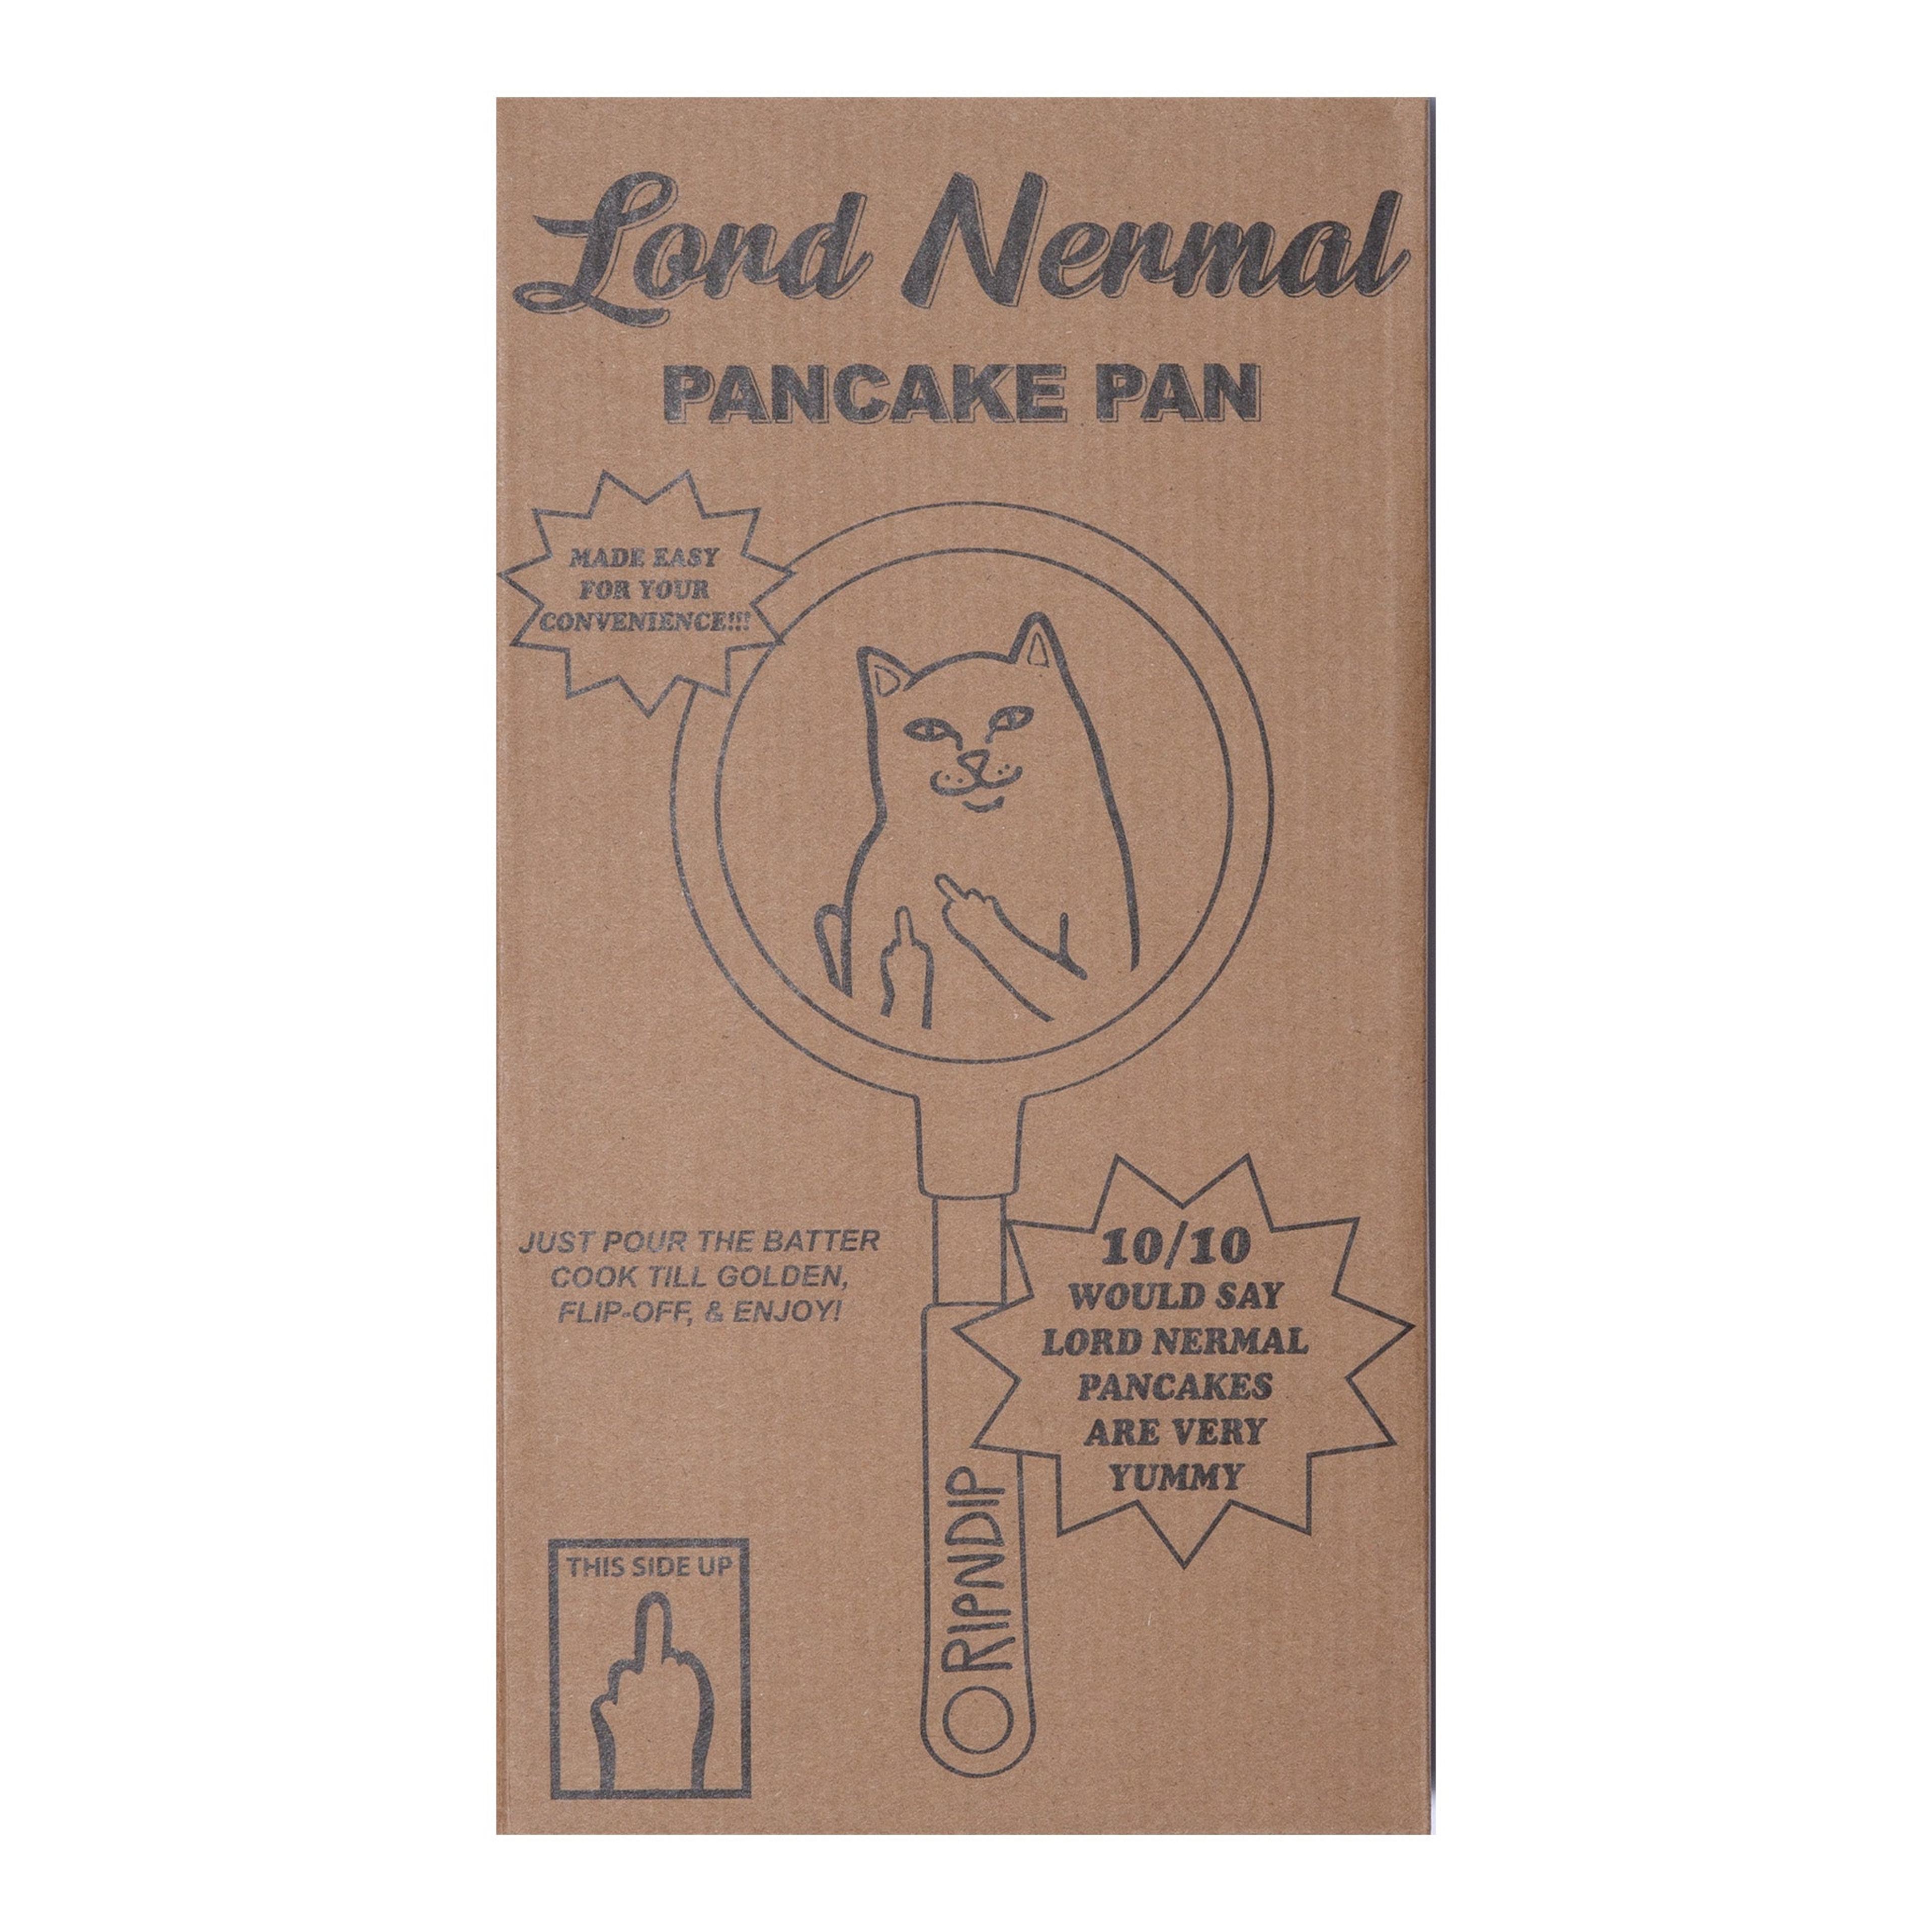 Alternate View 6 of Lord Nermal Pancake Pan (Black)